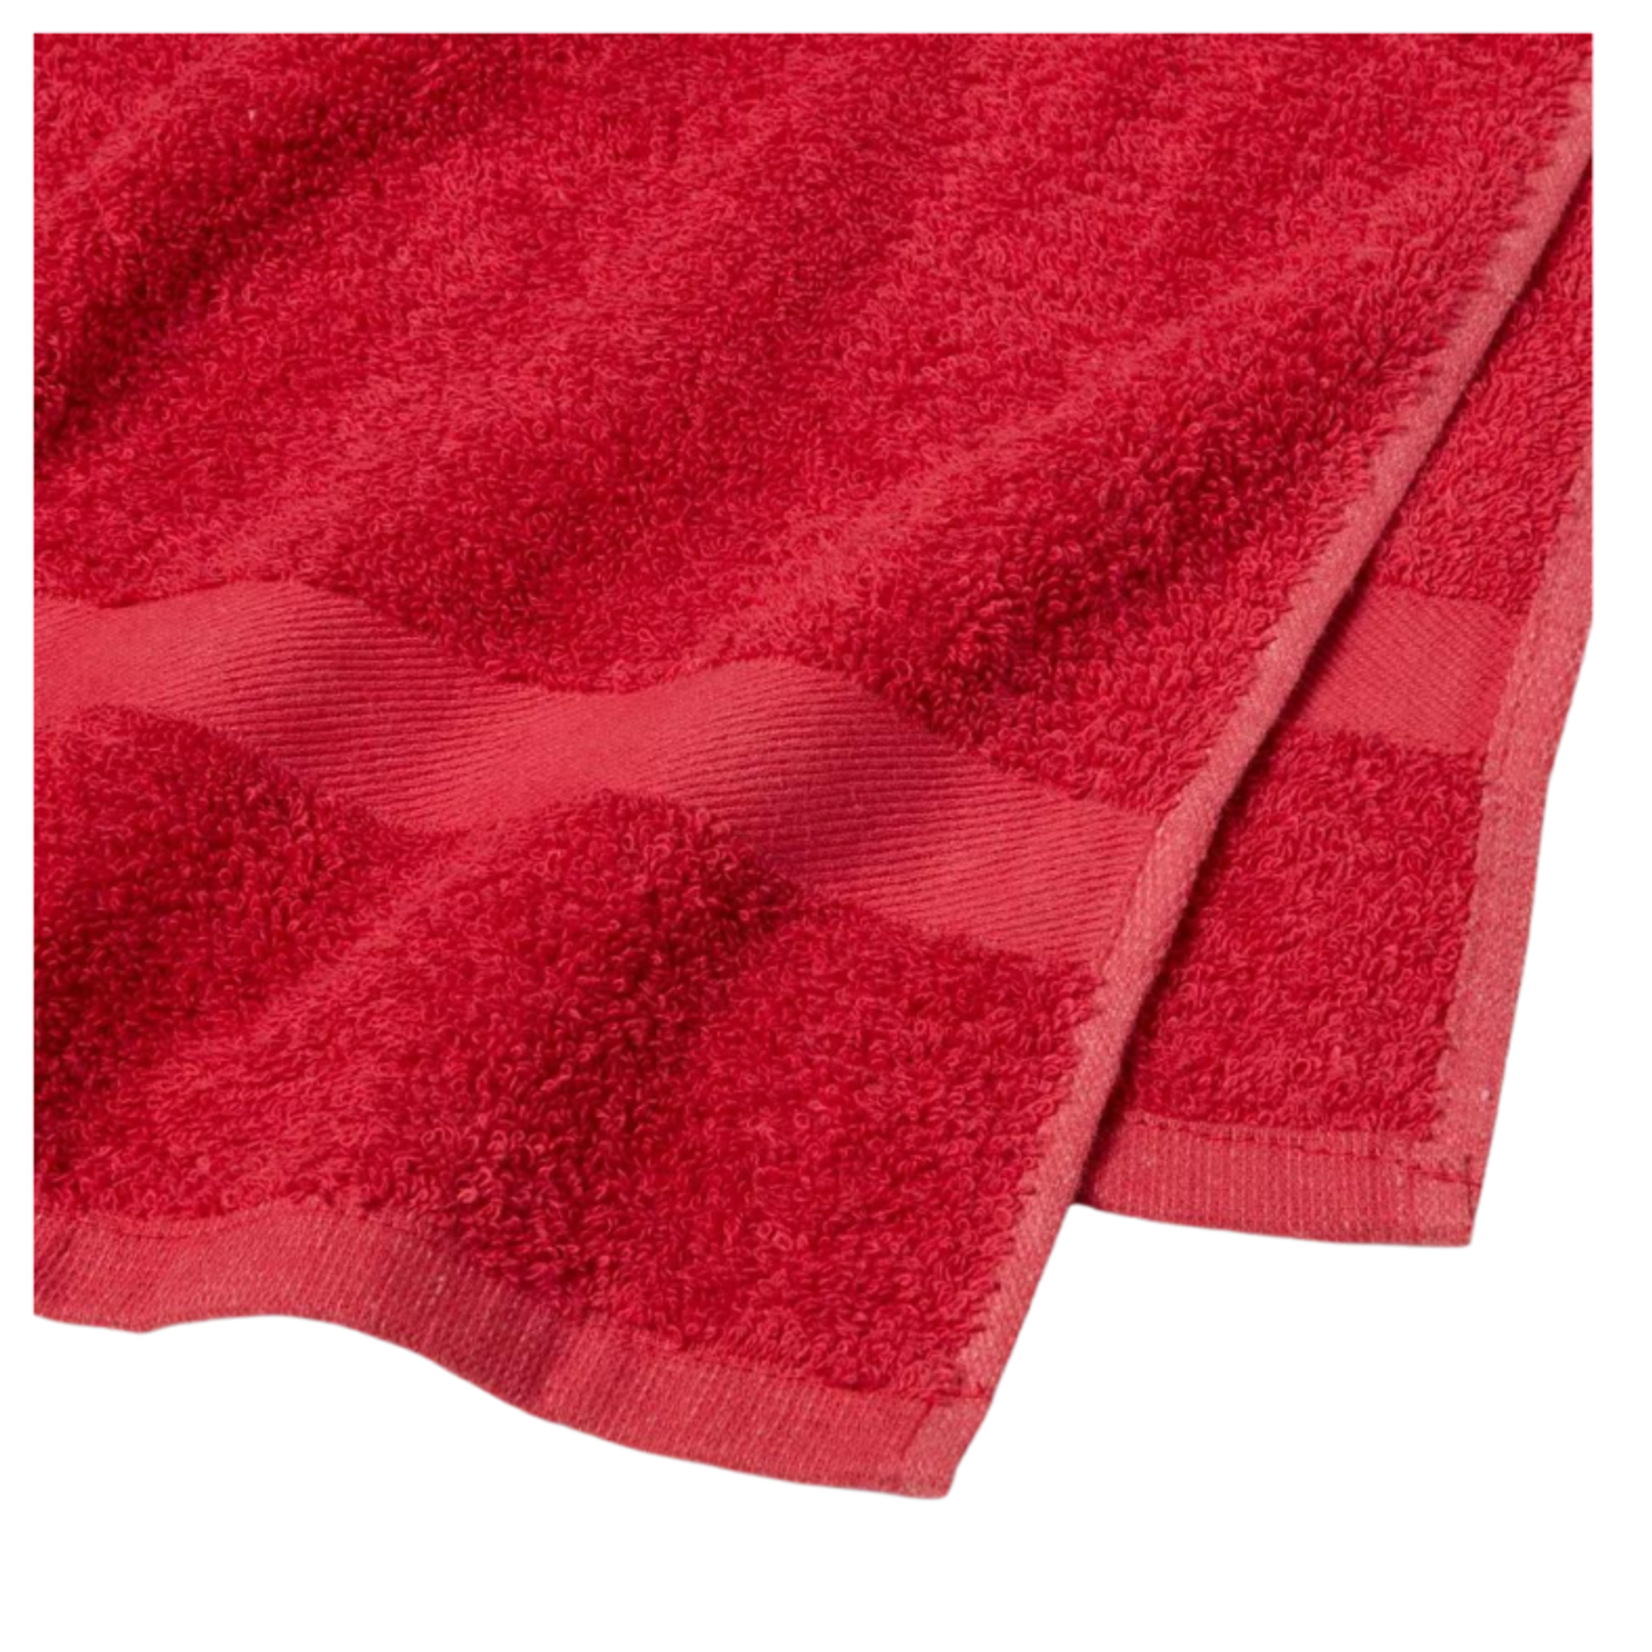 Wondershop Bath Towel-Red